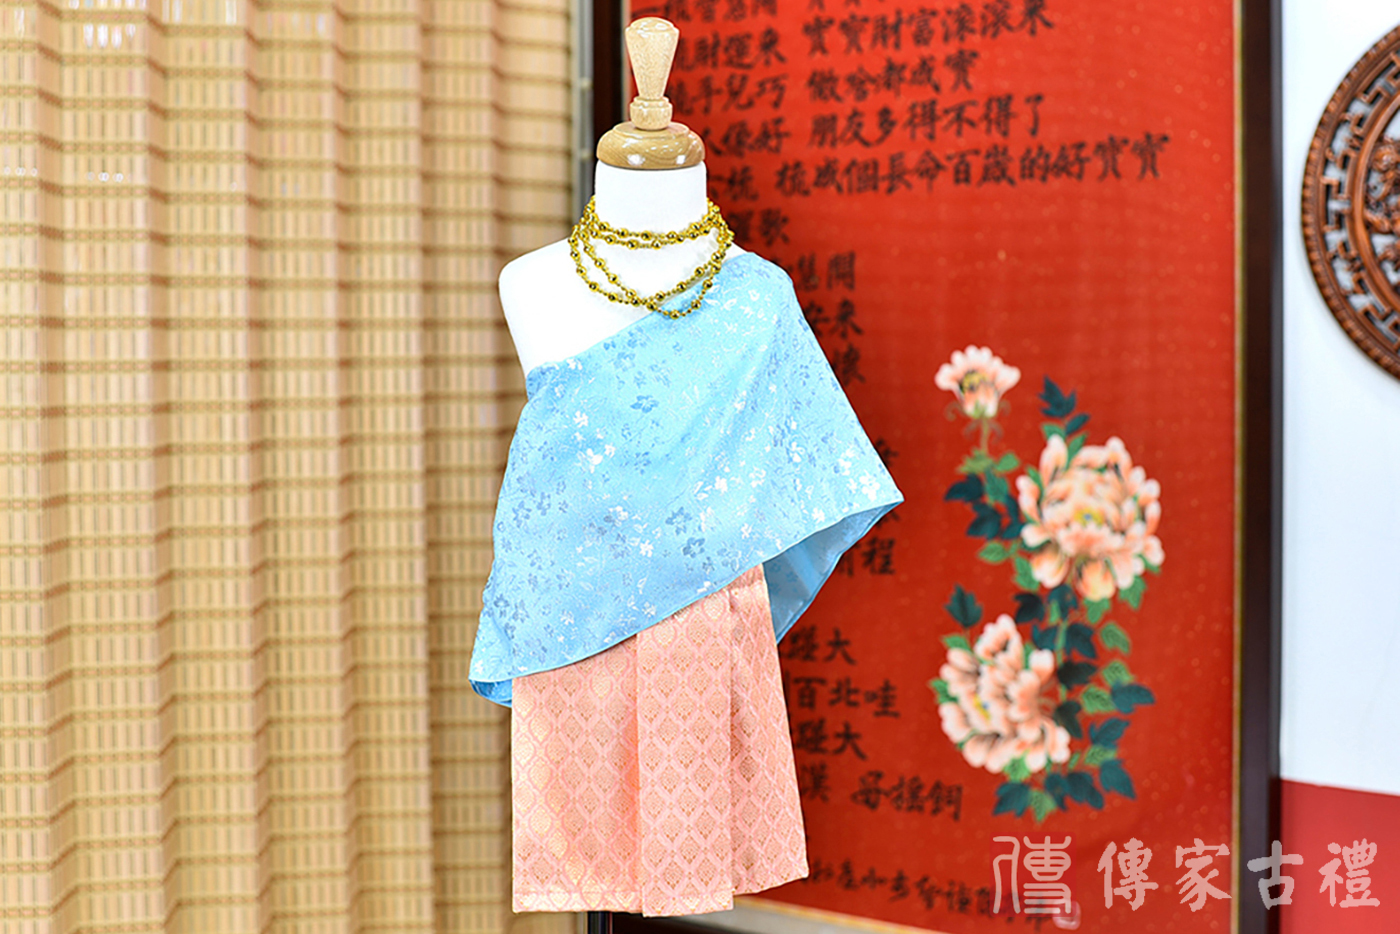 2024-02-22小孩皇室泰服古裝禮服。淺藍色絲緞的披肩與橘紅色棉質裙裝的泰式古裝禮服。照片集